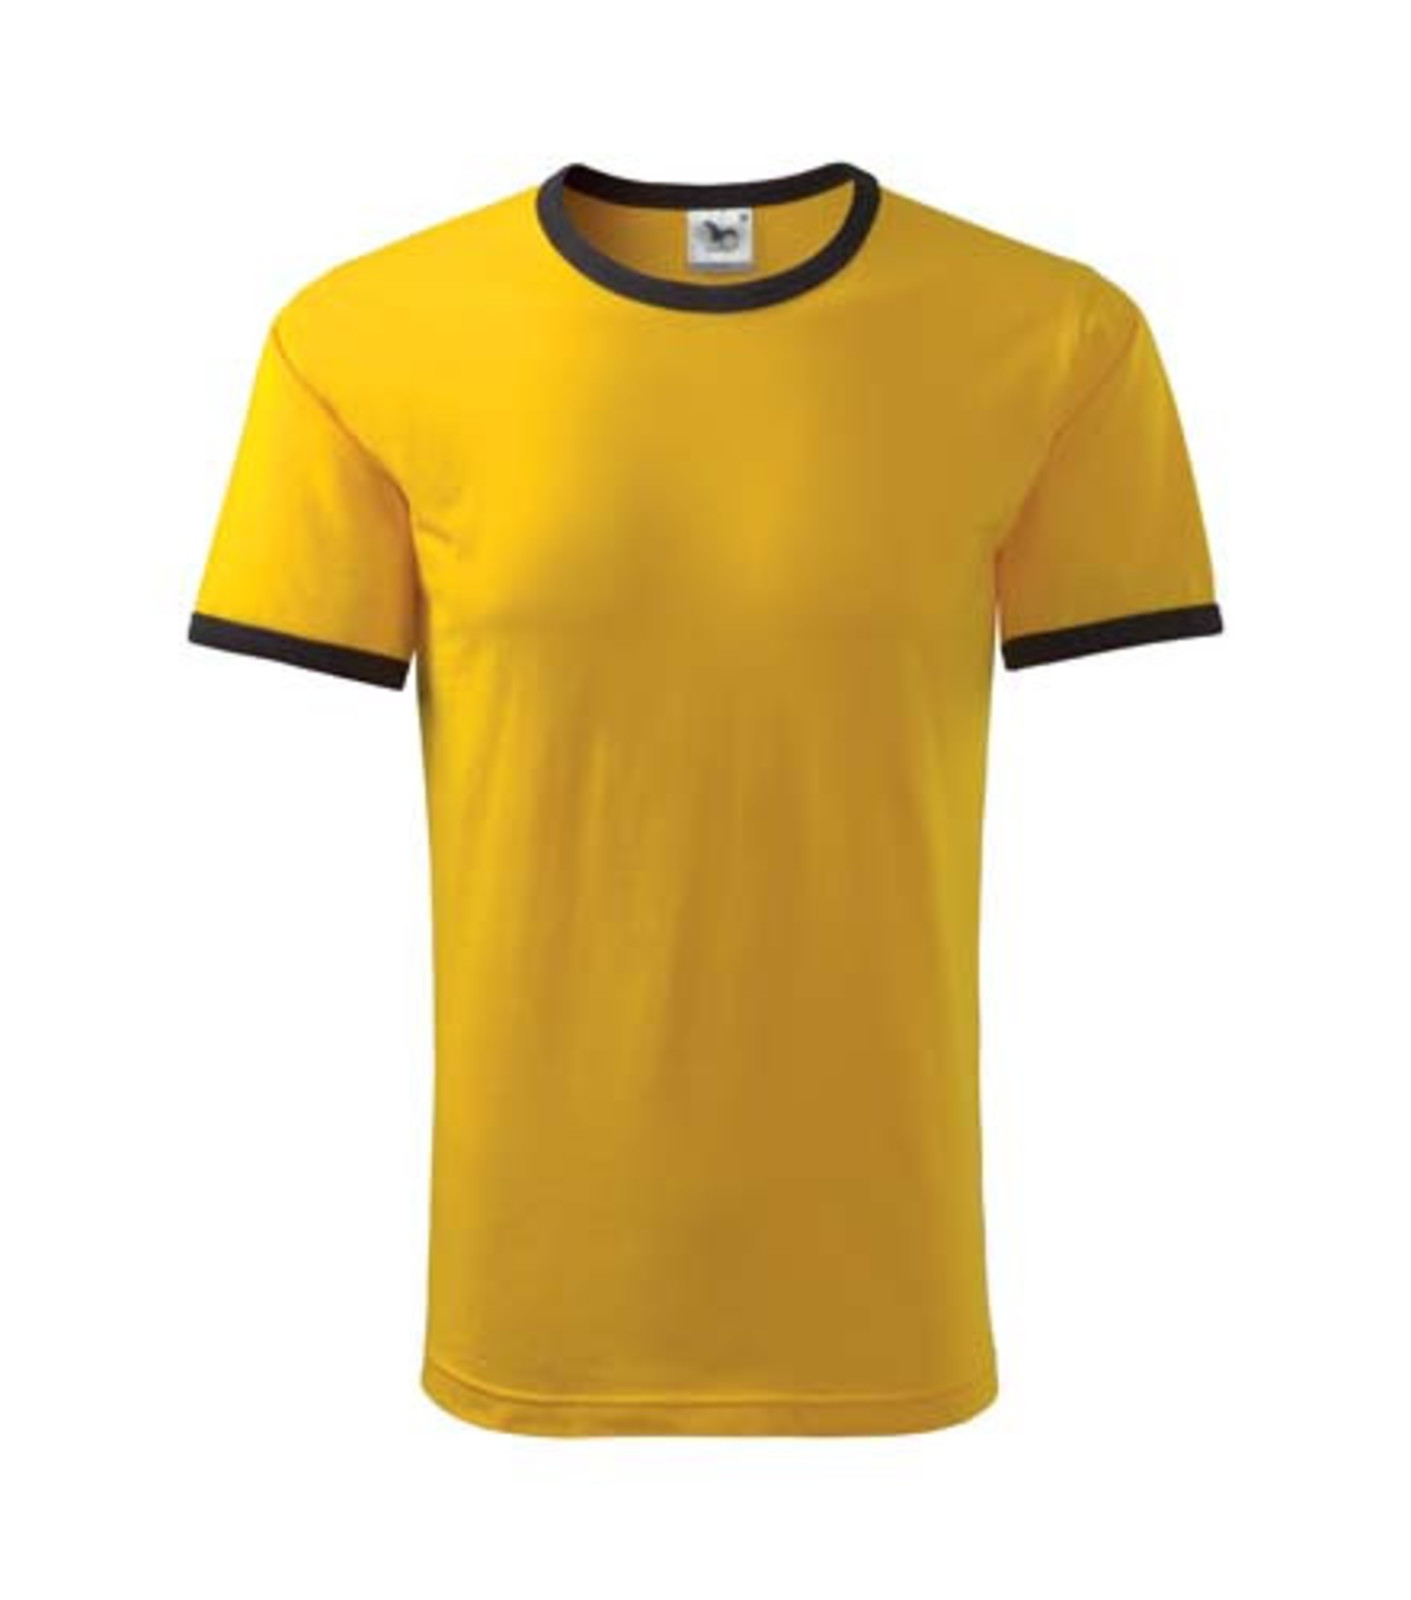 Unisex tričko Adler Infinity 131 - veľkosť: M, farba: čierna/žltá